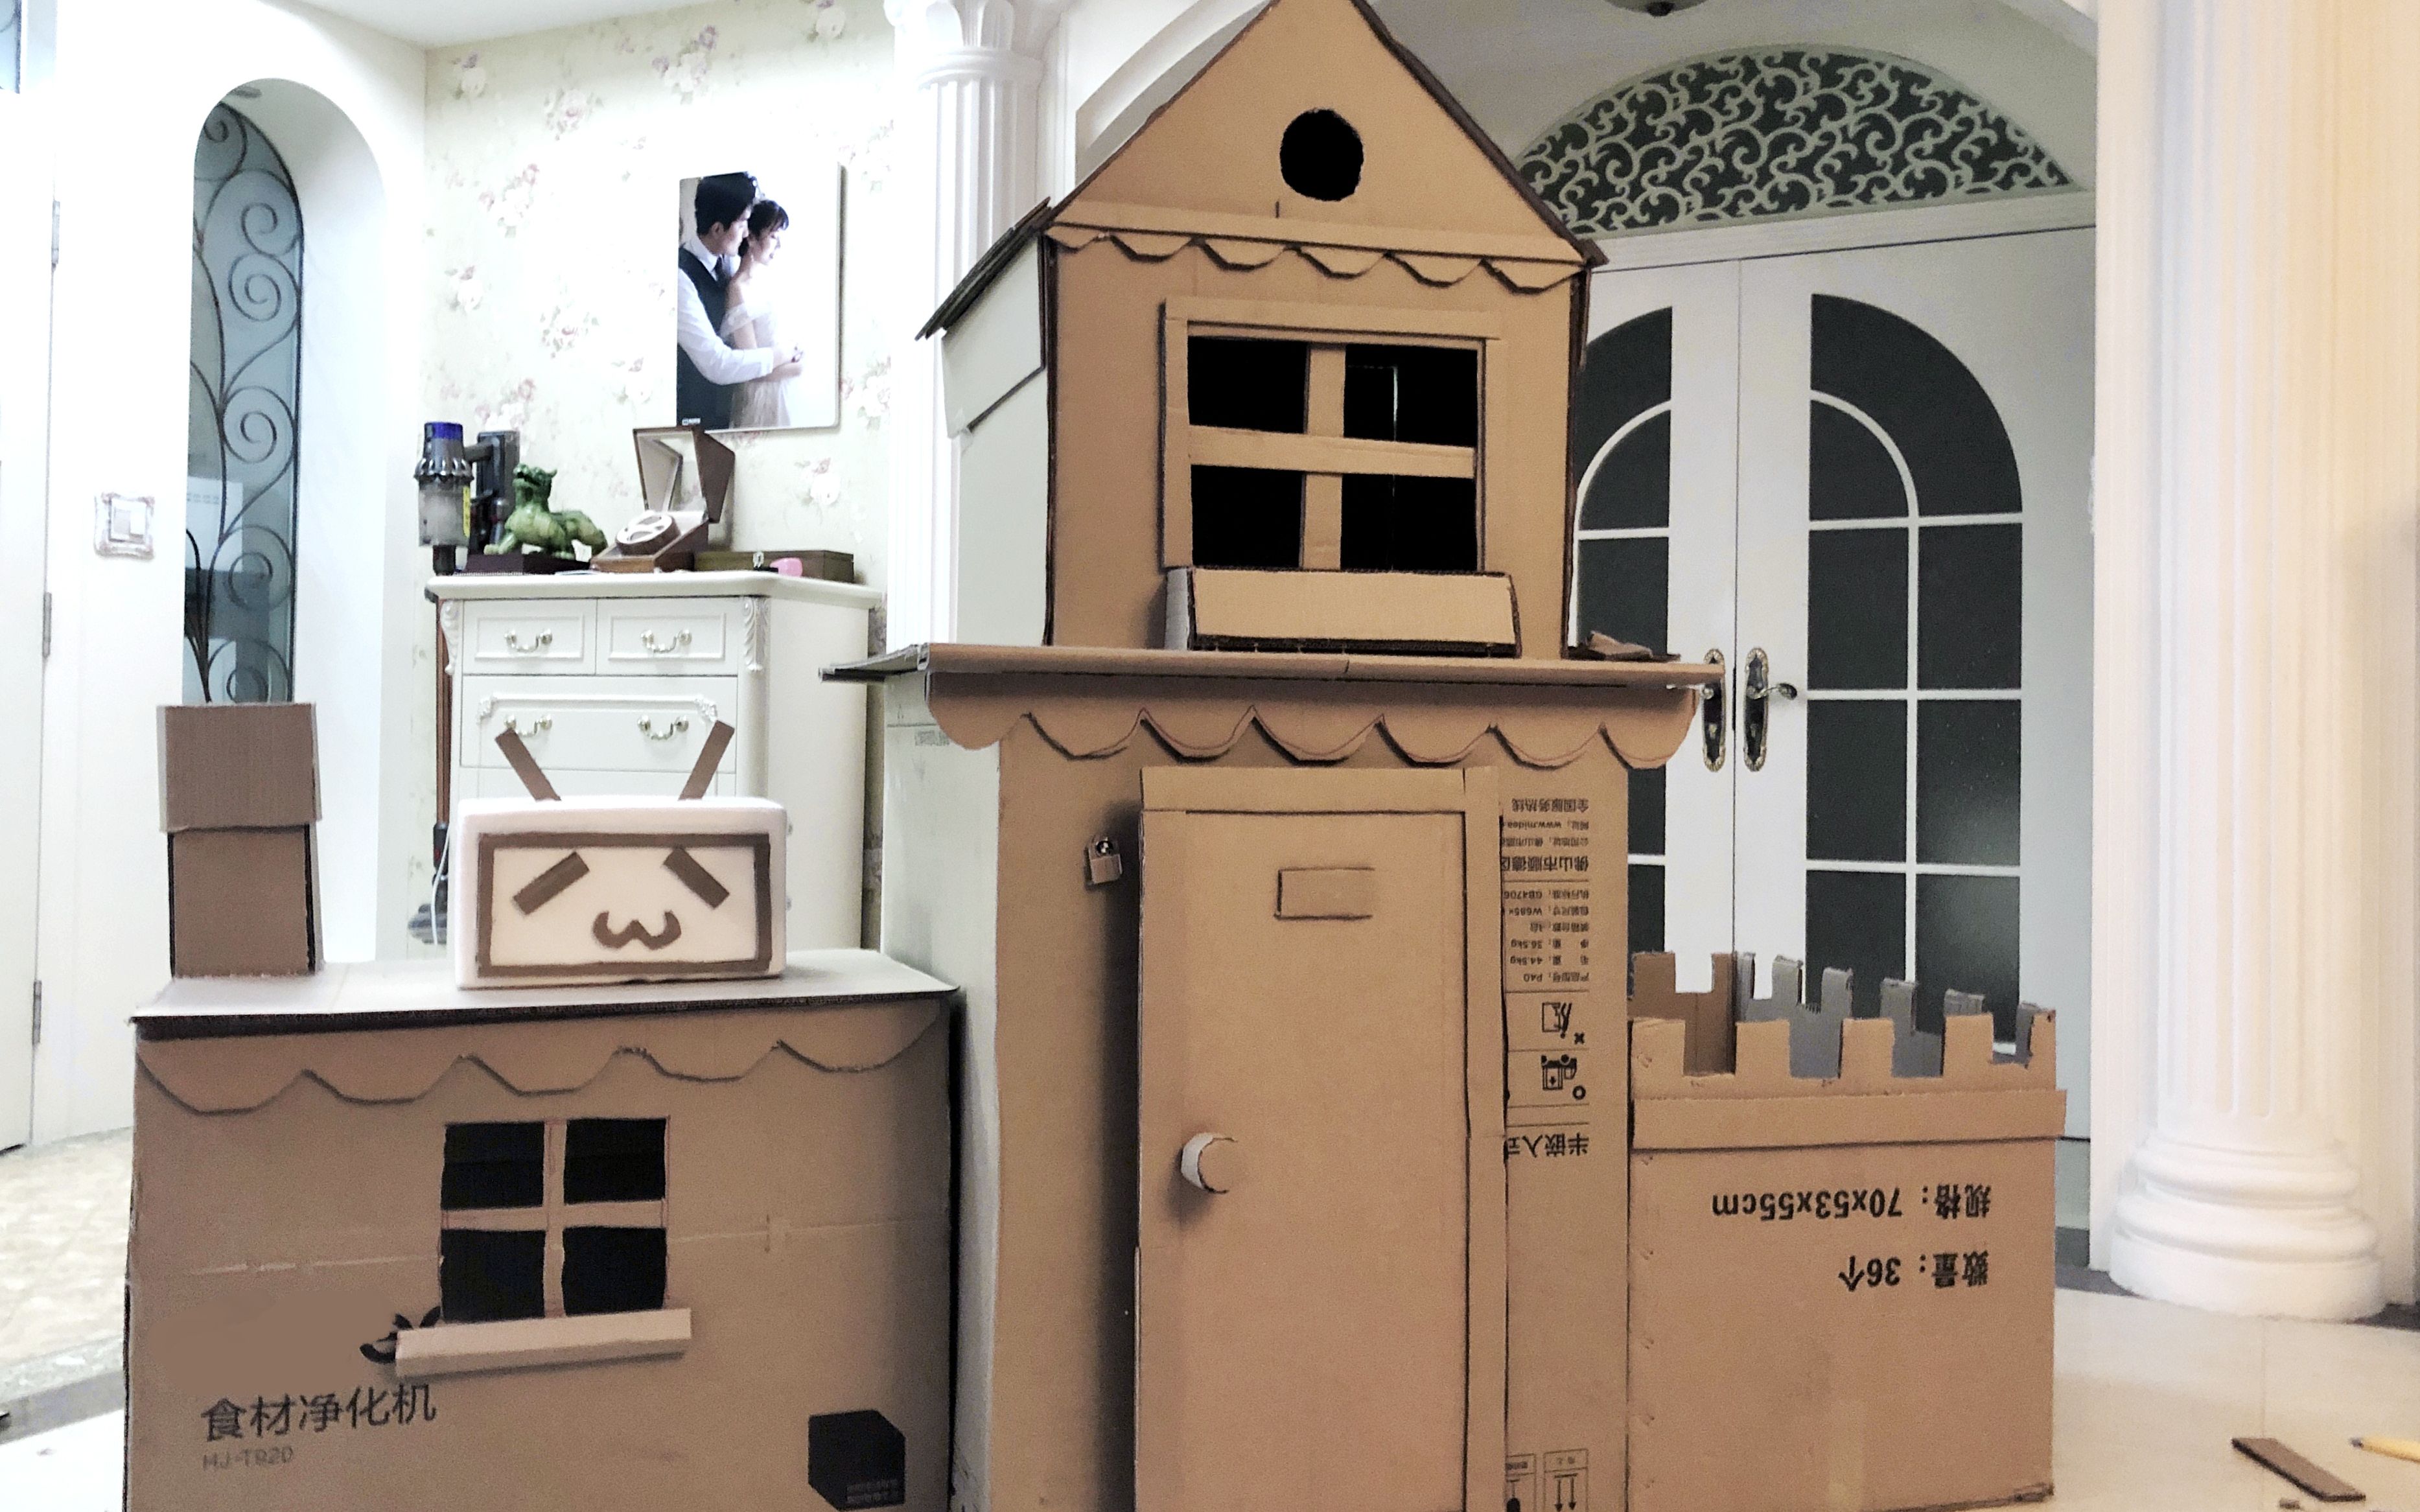 画手夫妻耗时10天用纸箱纯手工造儿童别墅